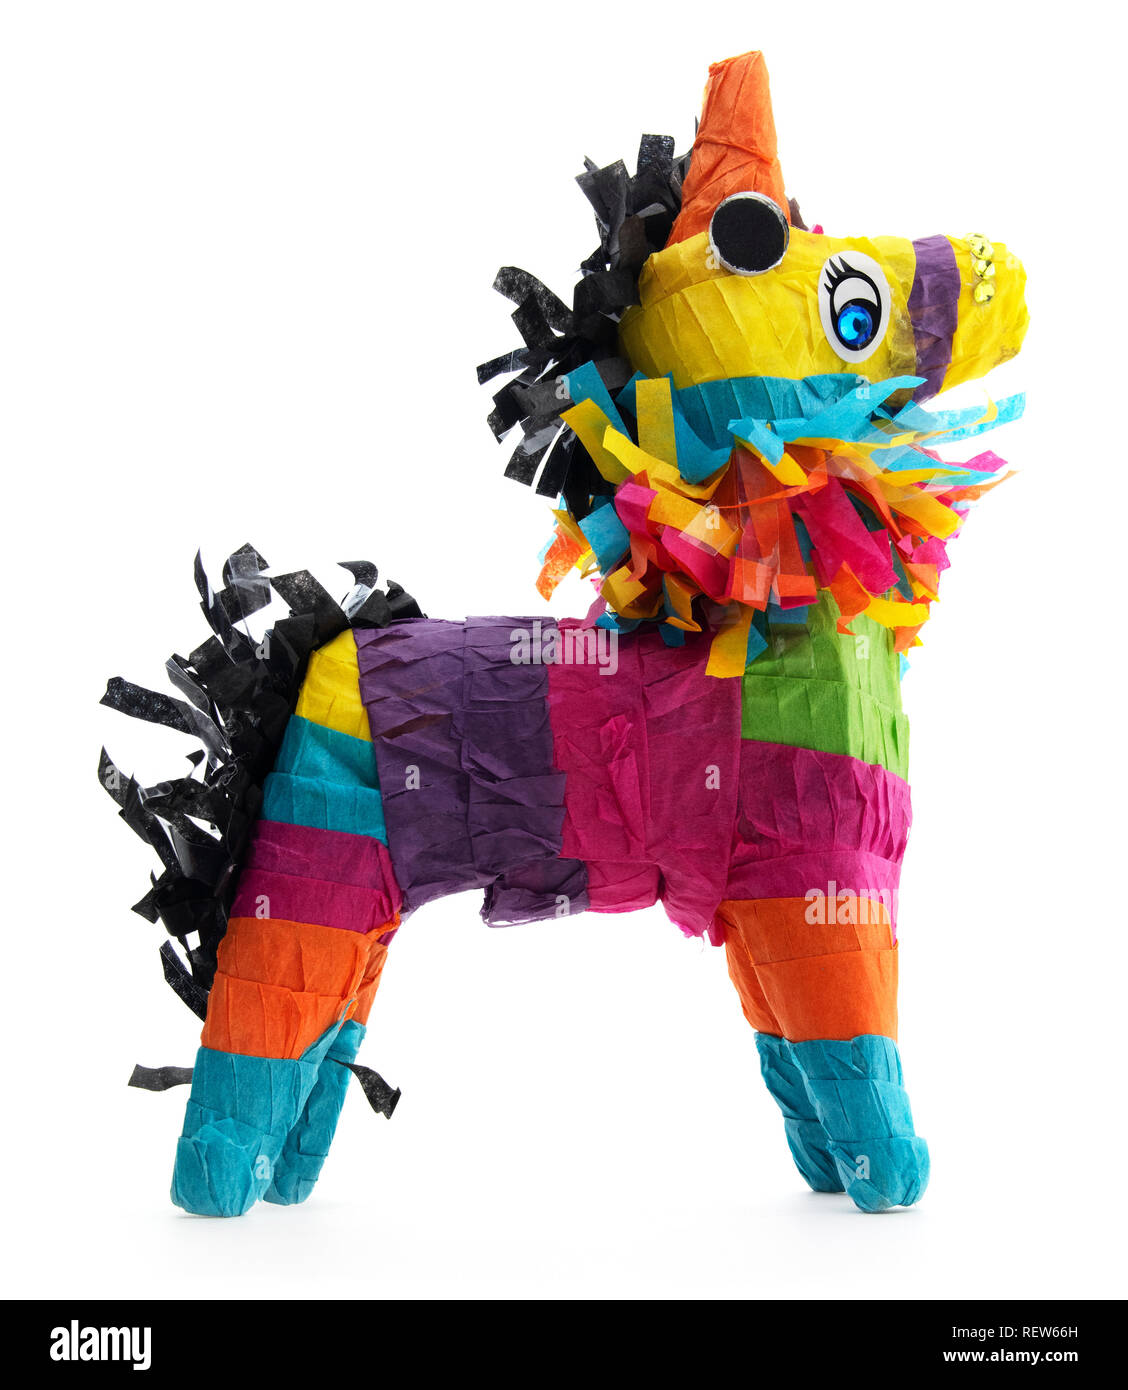 Isolierte Mexikanischen burro Esel piñata. Seitliche Sicht auf farbenfrohe mexikanische Esel piñata auf einem weißen Hintergrund. Stockfoto